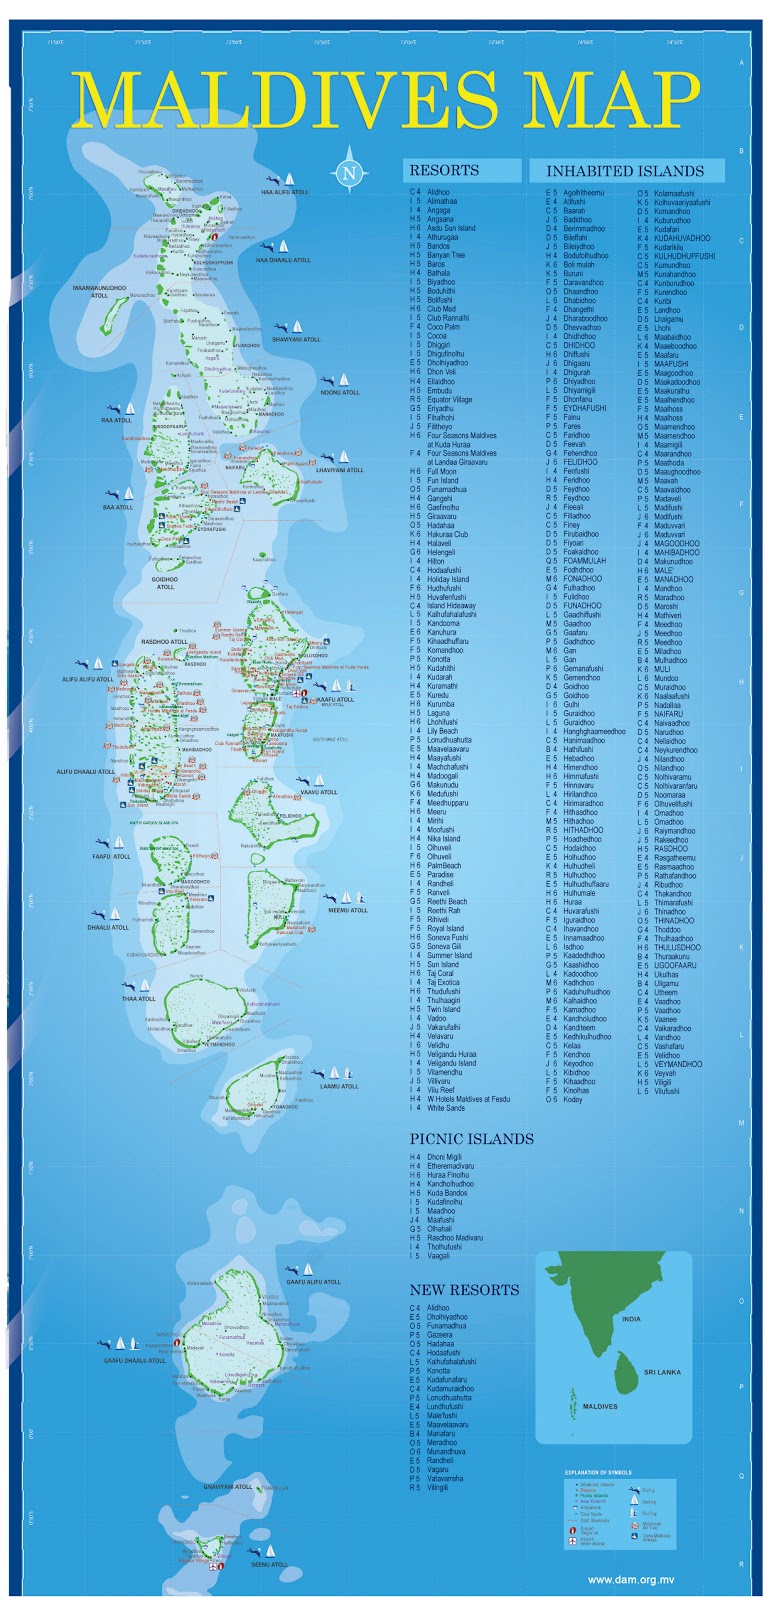 MAPS OF MALDIVES